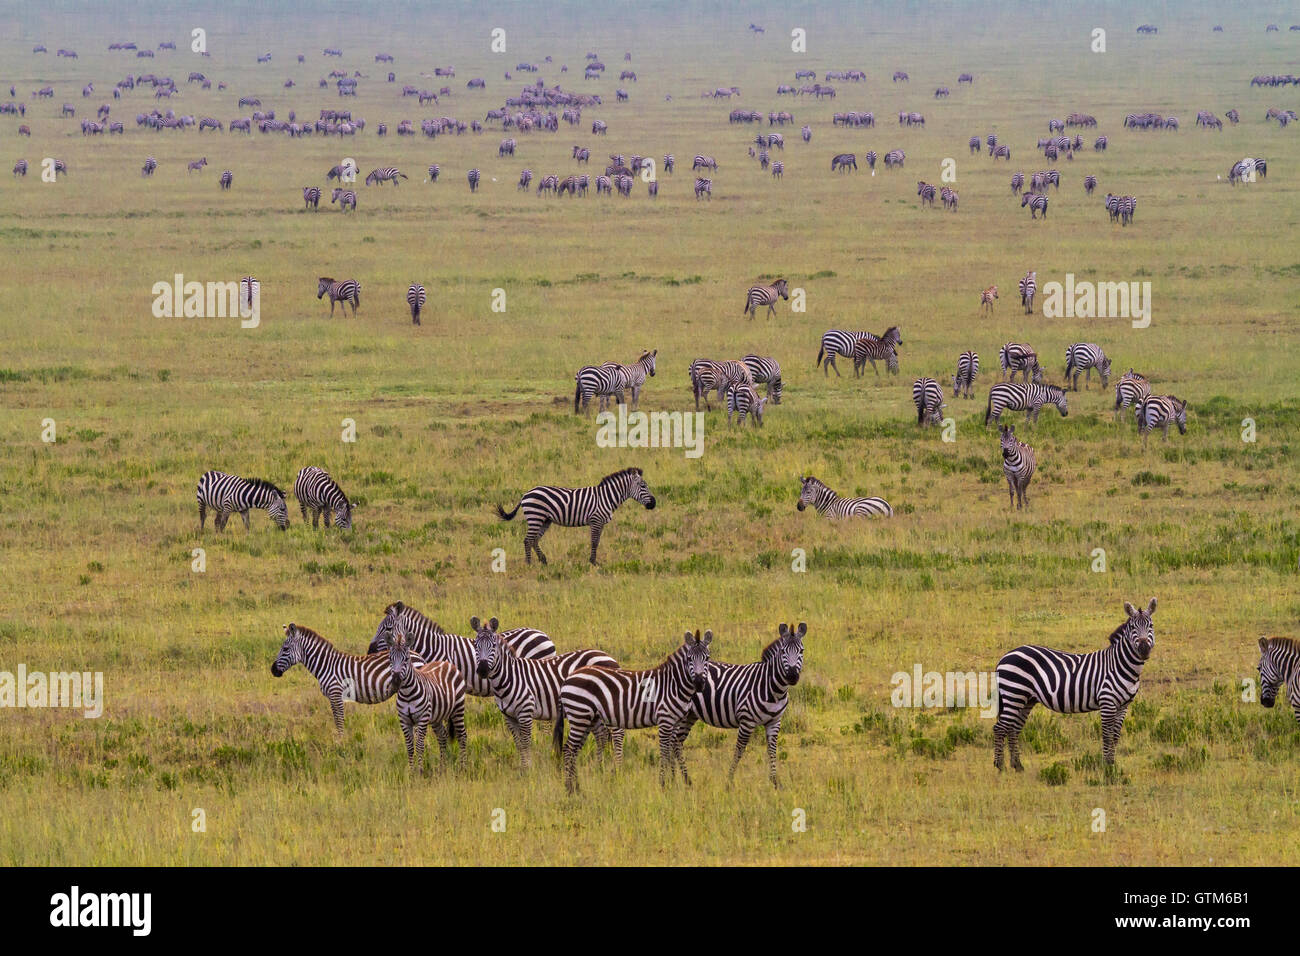 Ingente manada de cebras en las praderas del Parque Nacional del Serengeti durante la migración. Foto de stock